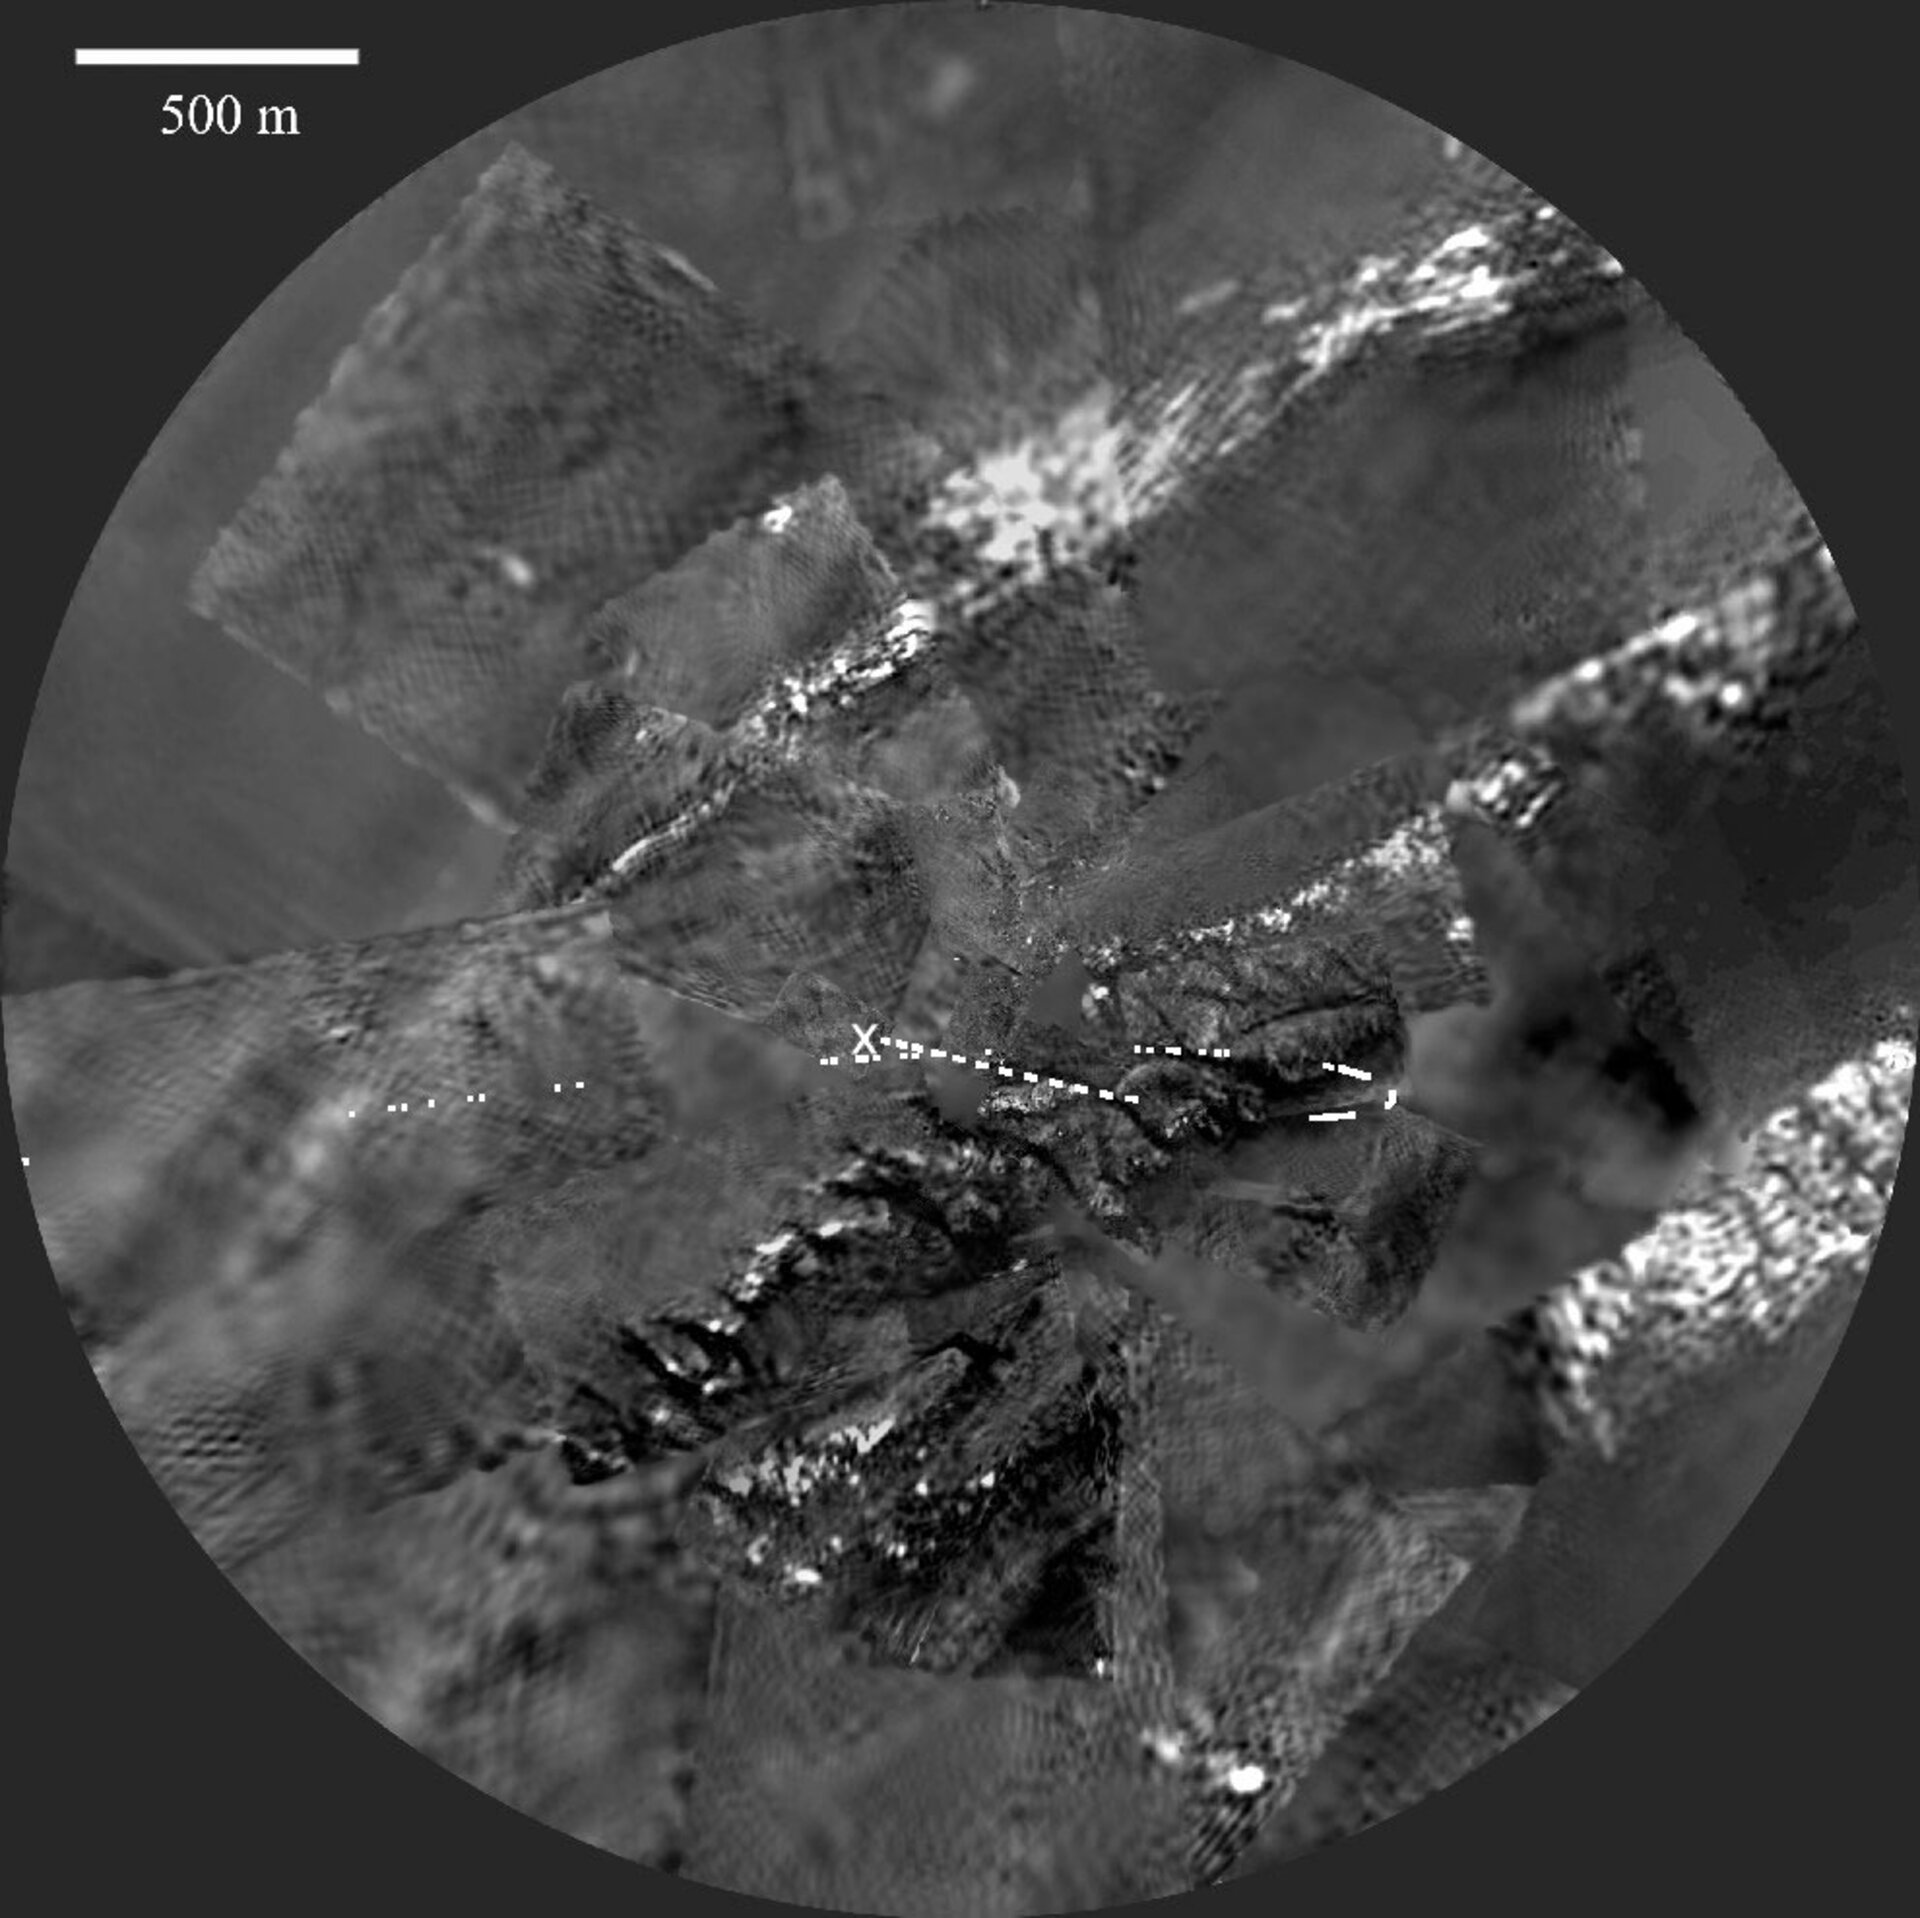 Immagine di Titano ottenuta con la DISR a una distanza di 1,2 km.